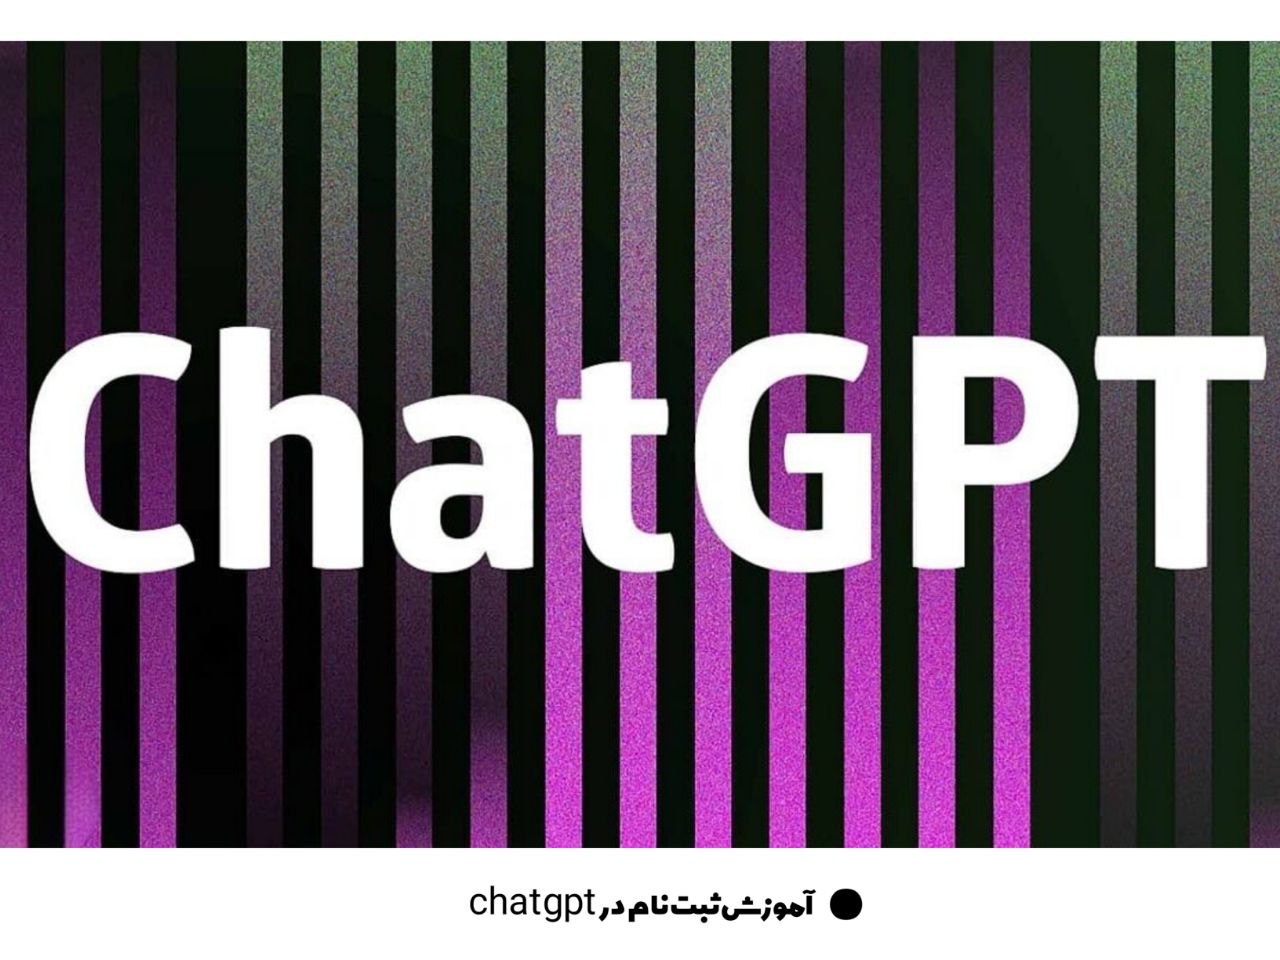 ثبت نام در chat GPT